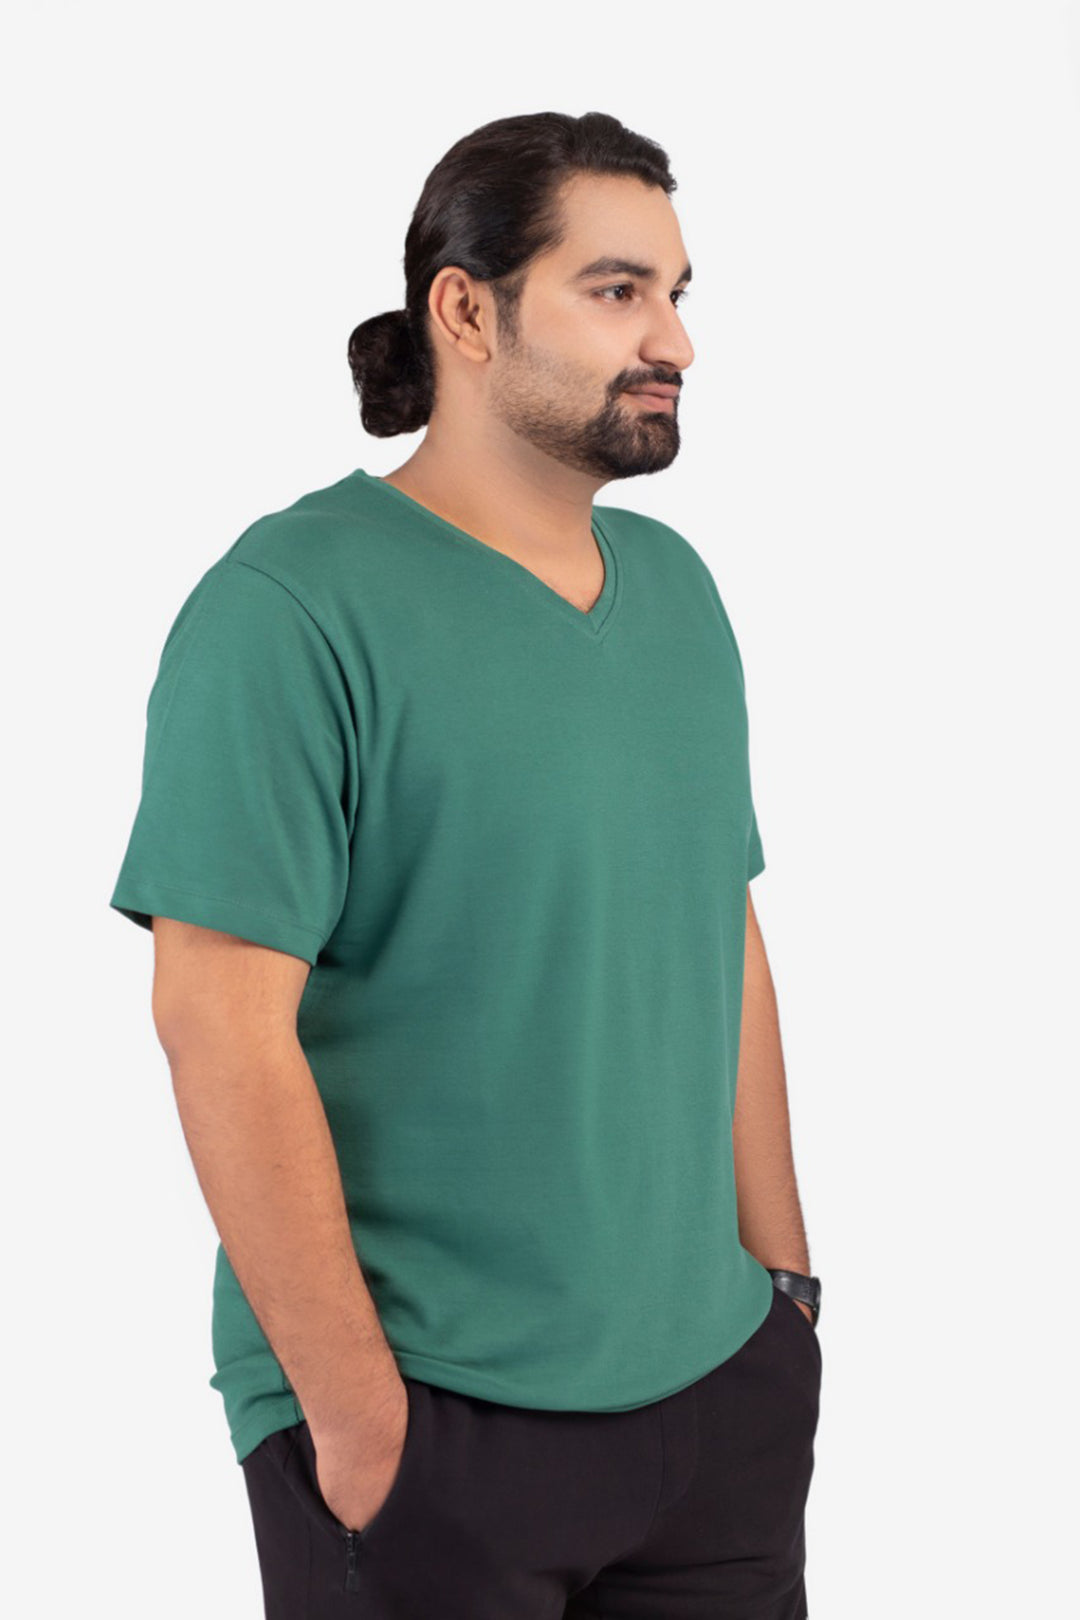 Plus Size Plain T-Shirts in Pakistan